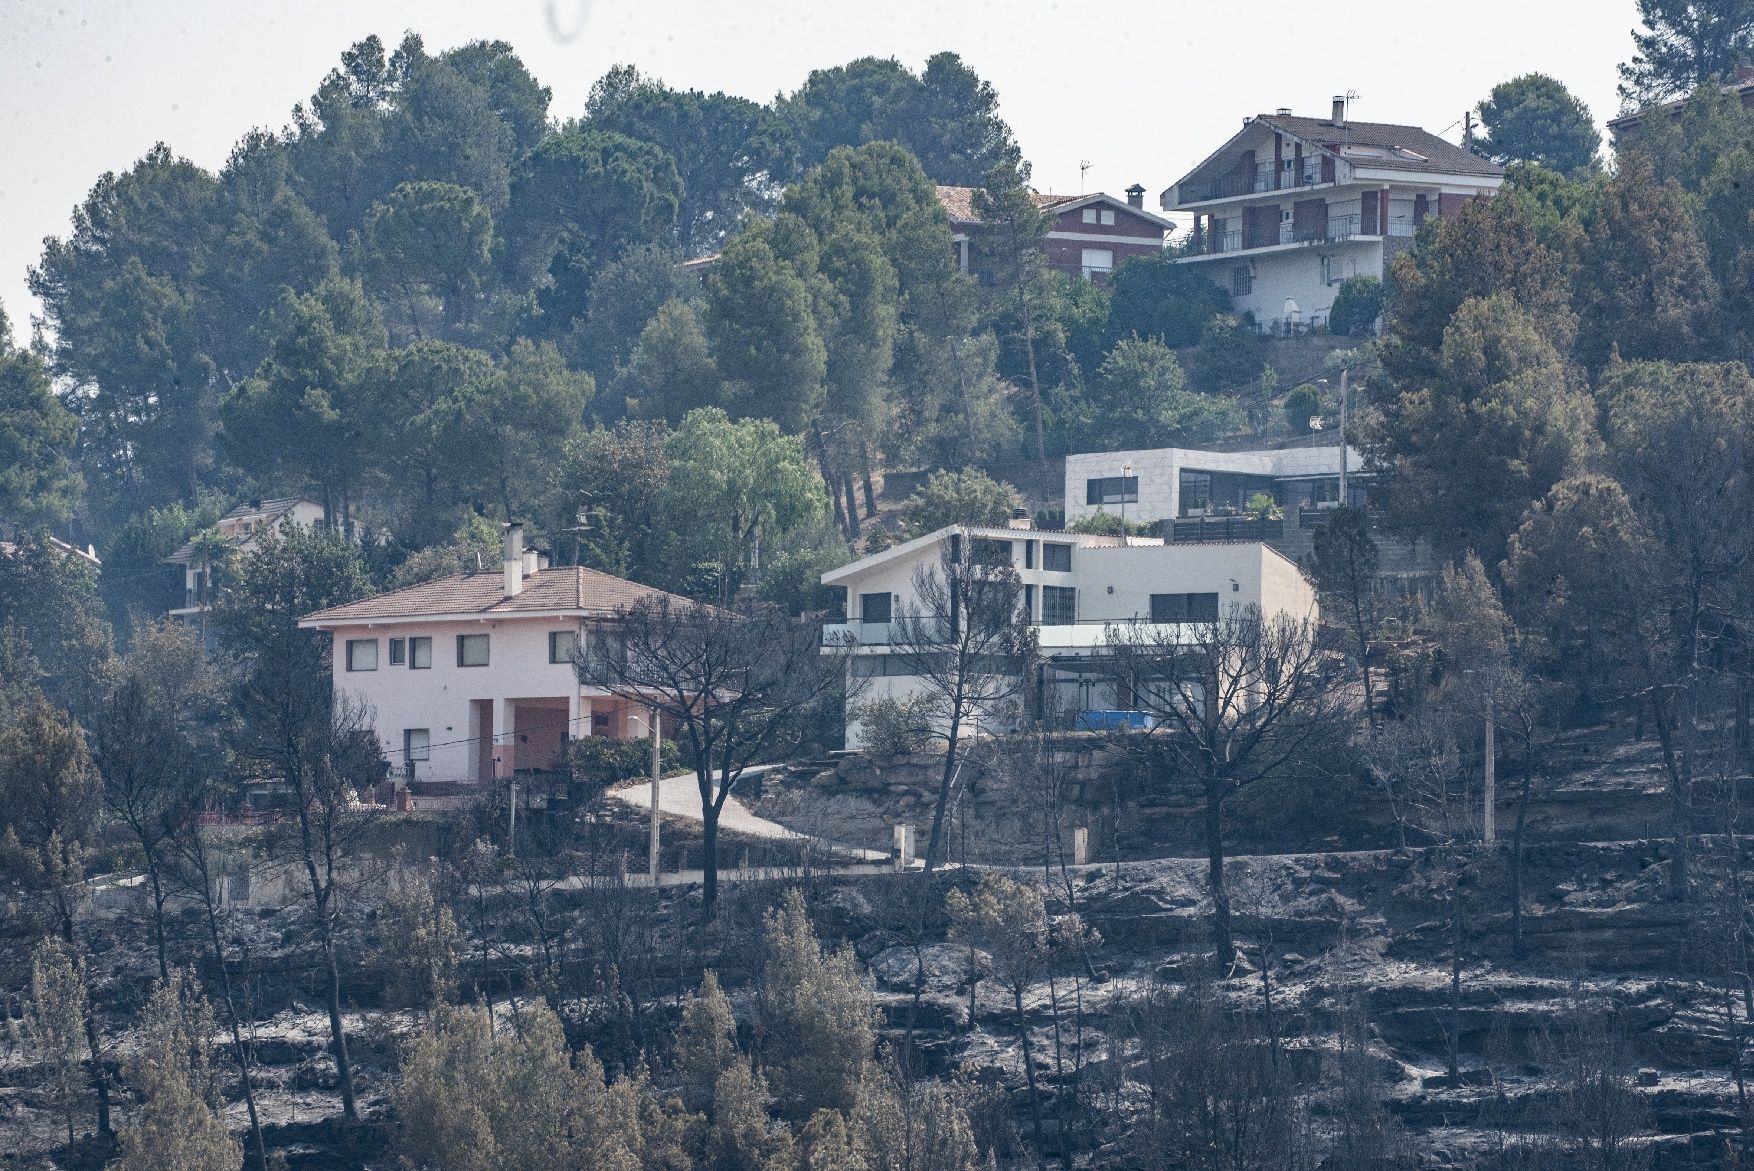 Afectació per l'incendi a la urbanització de les Brucardes